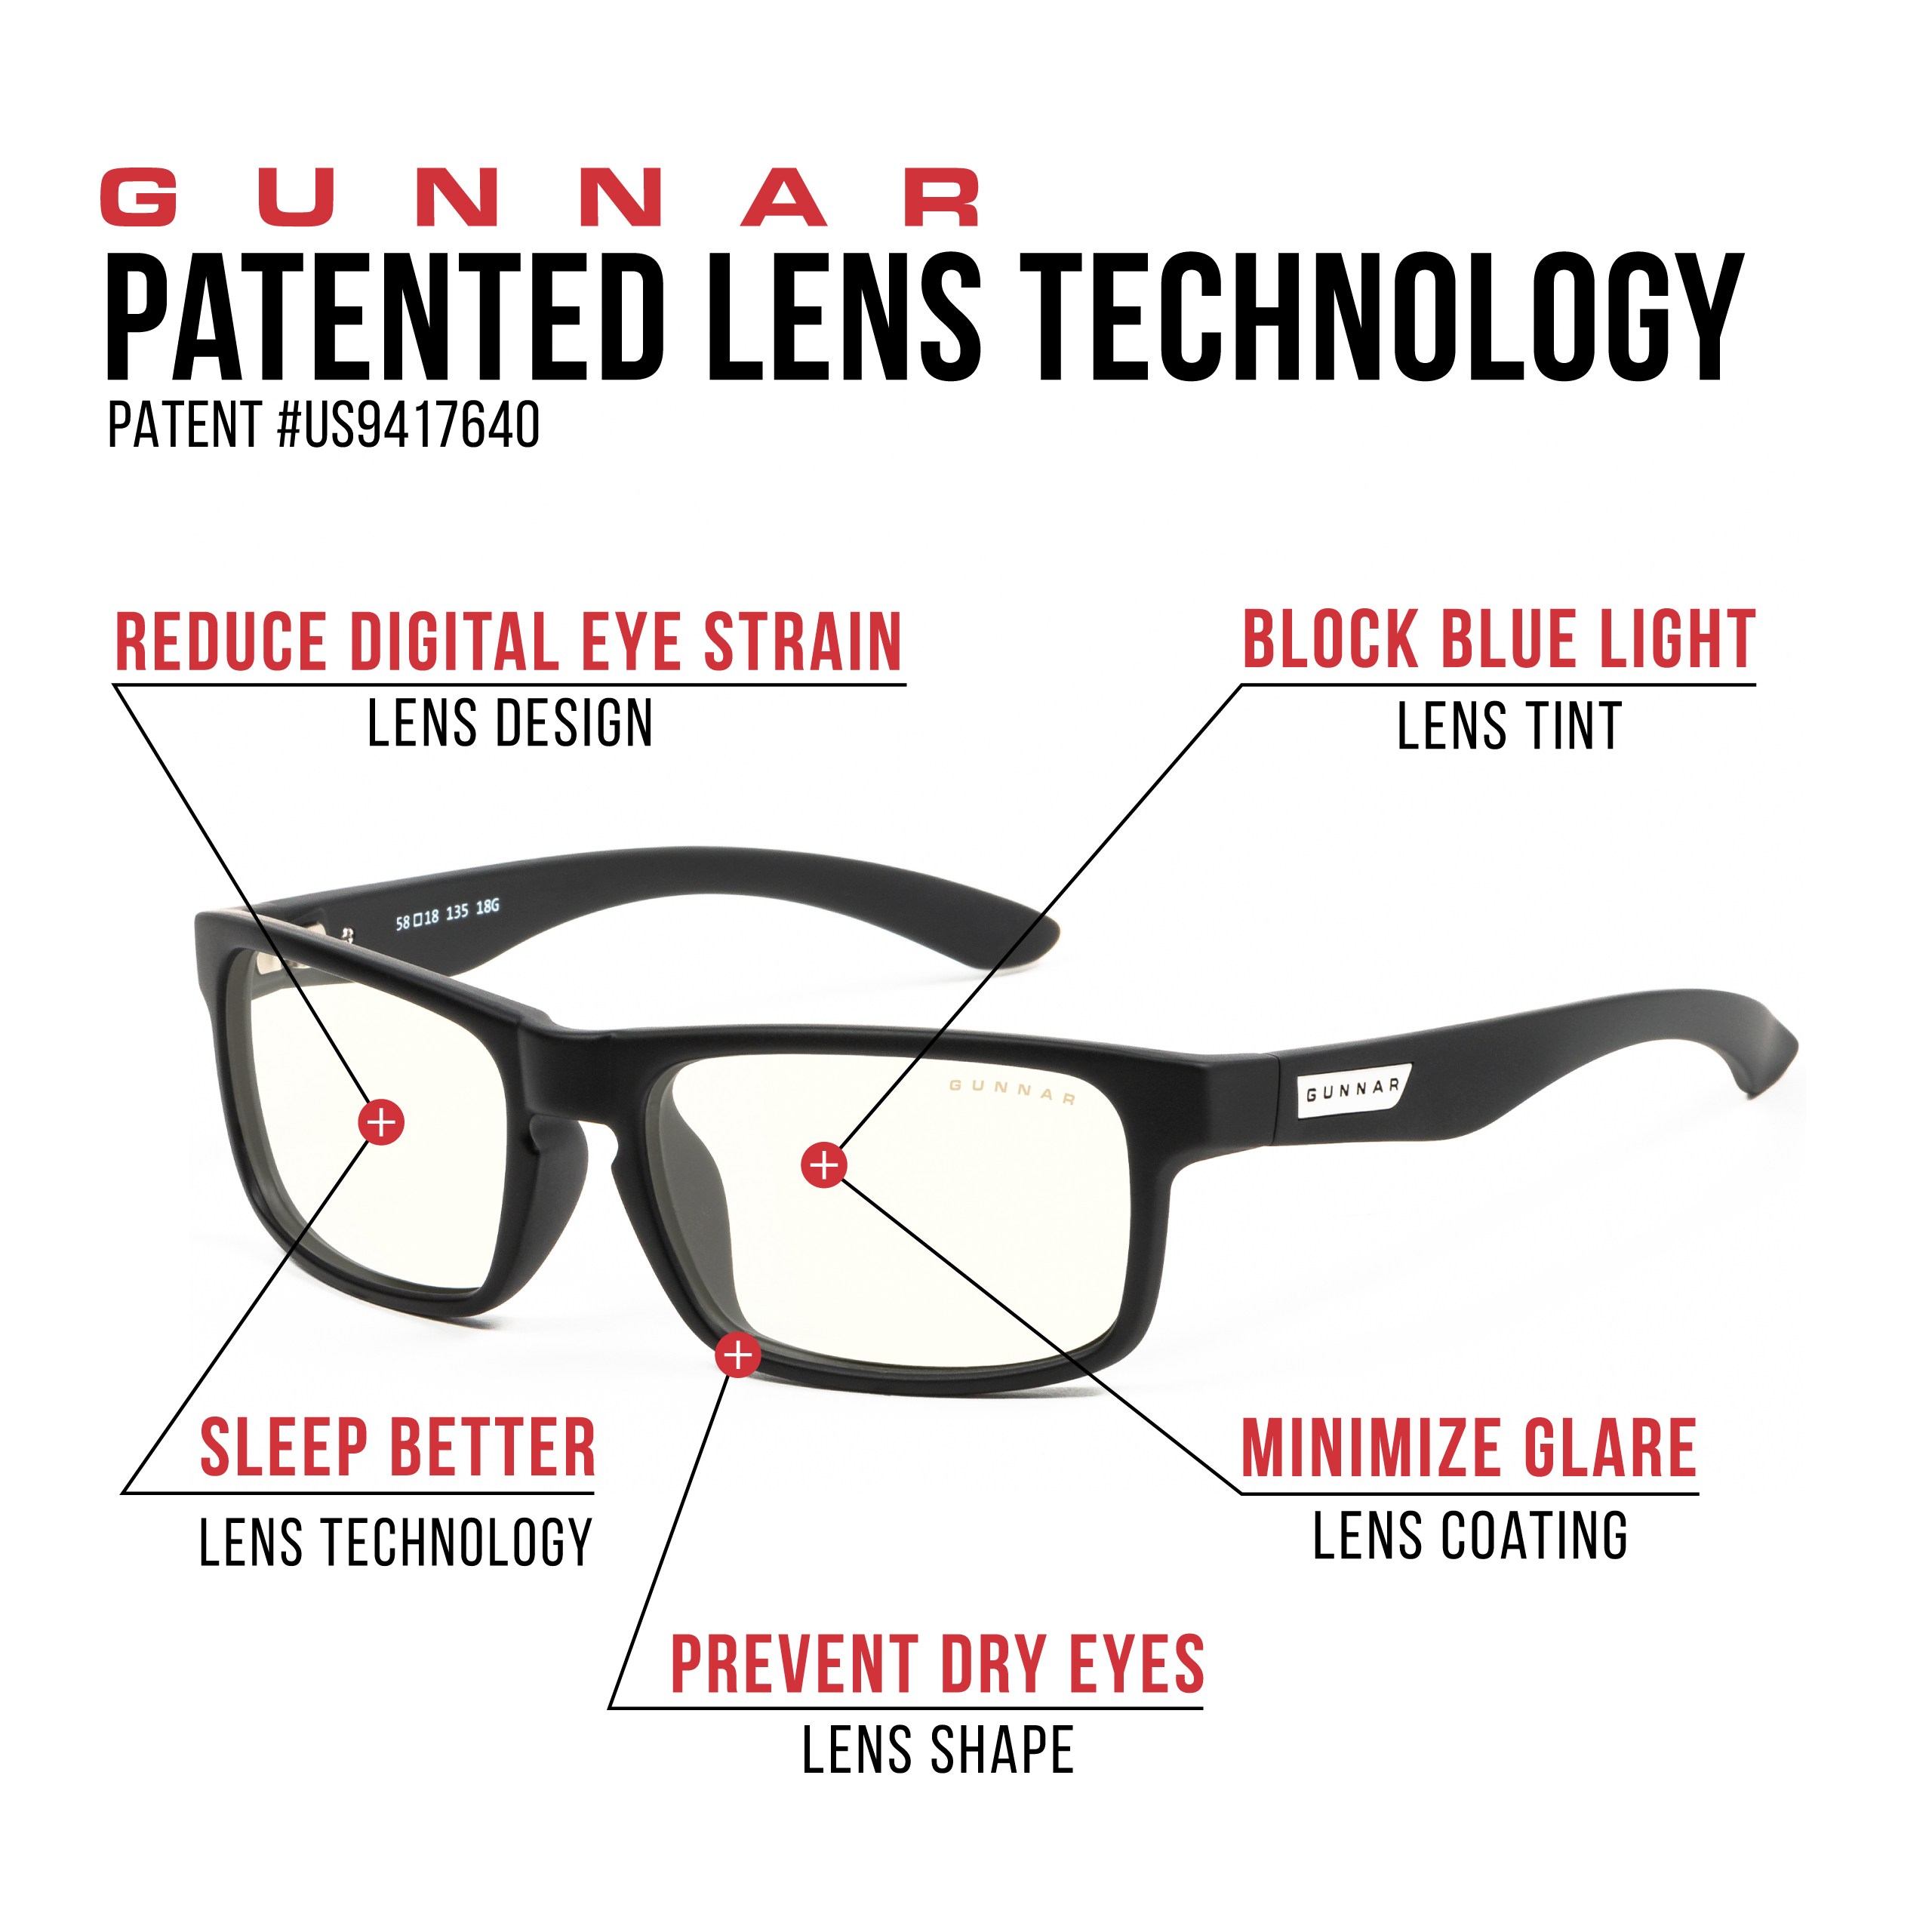 GUNNAR Enigma, Onyx Rahmen, Clear Premium, Tönung, UV-Schutz, Blaulichtfilter, Brille Gaming